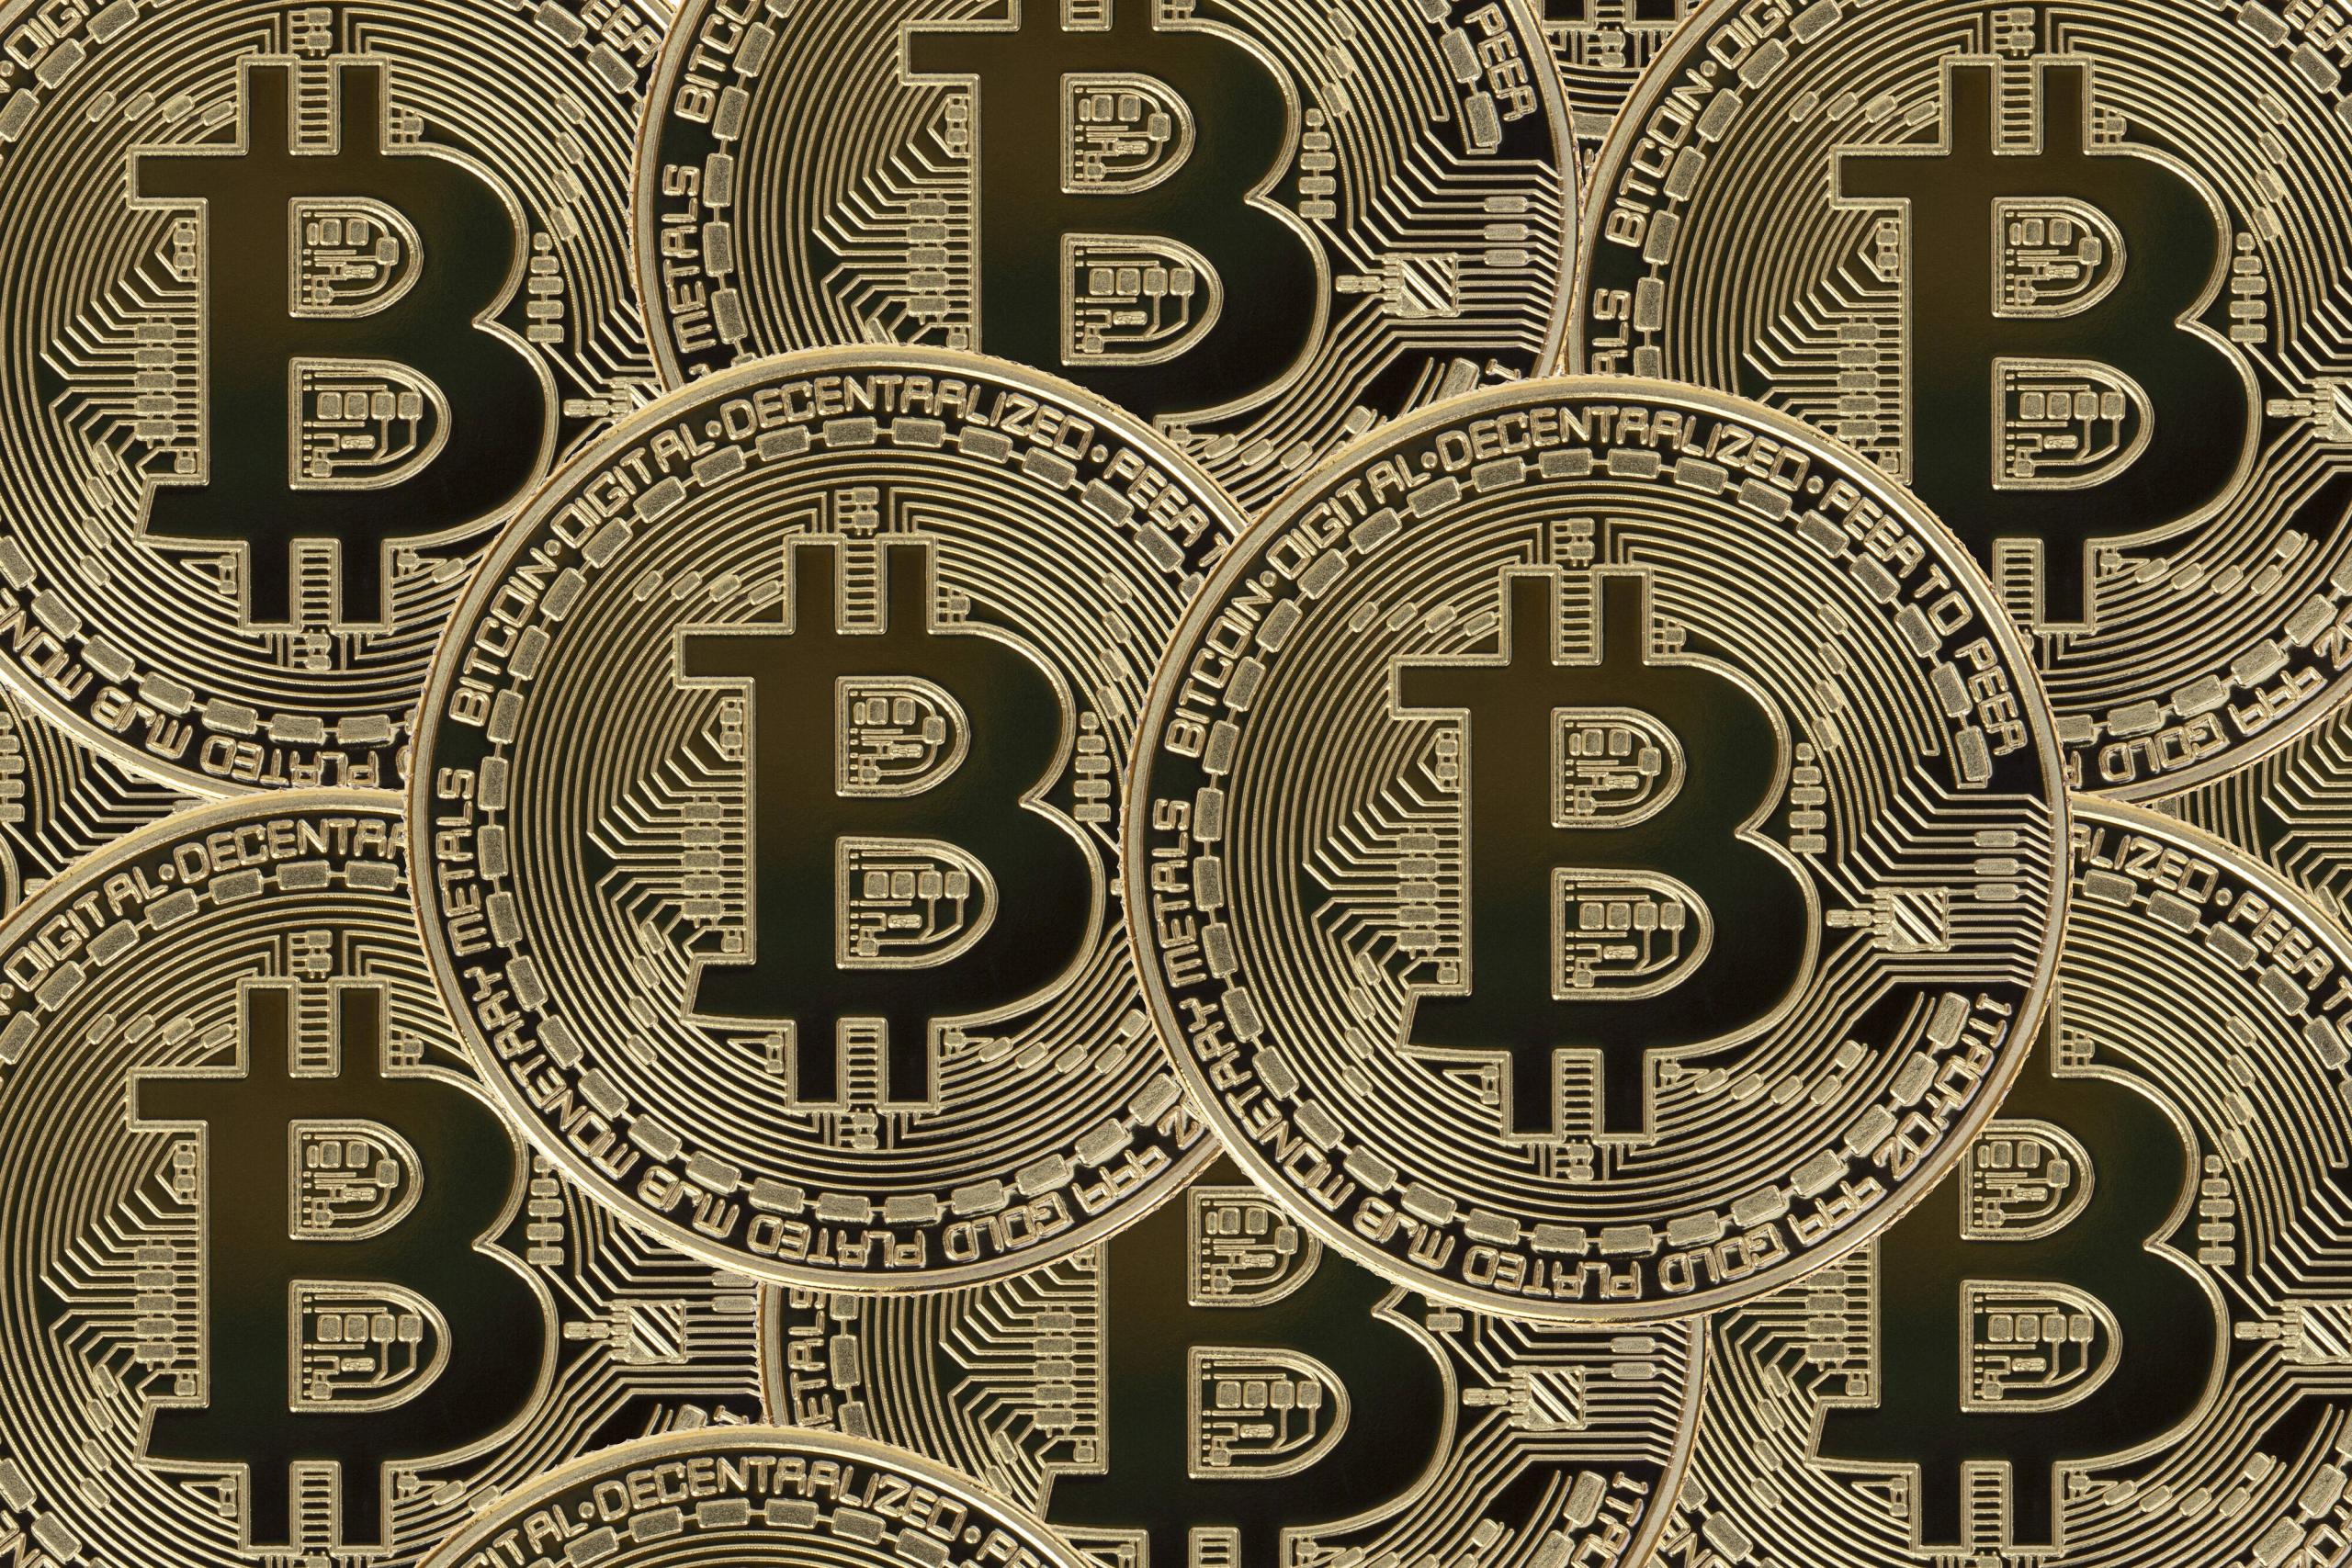 Um Transparenz und Anonymität zu gewährleisten, gibt es bessere Möglichkeiten als den Bitcoin.